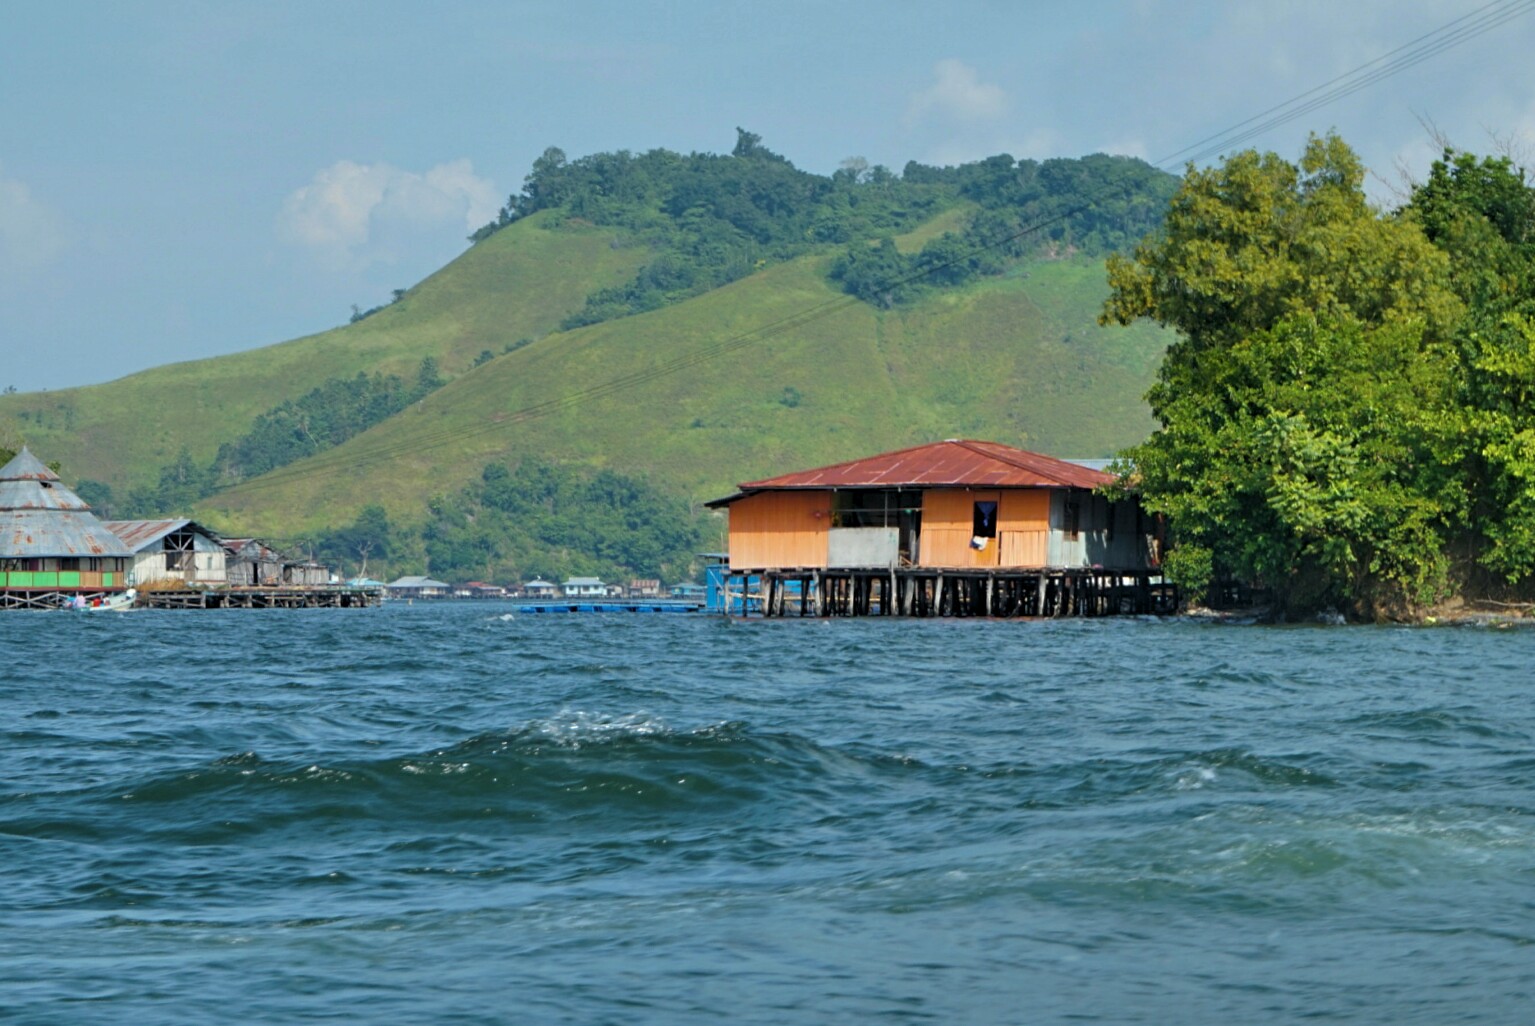 Rumah-rumah masyarakat Danau Sentani (Foto: Bagus DR / GNFI)